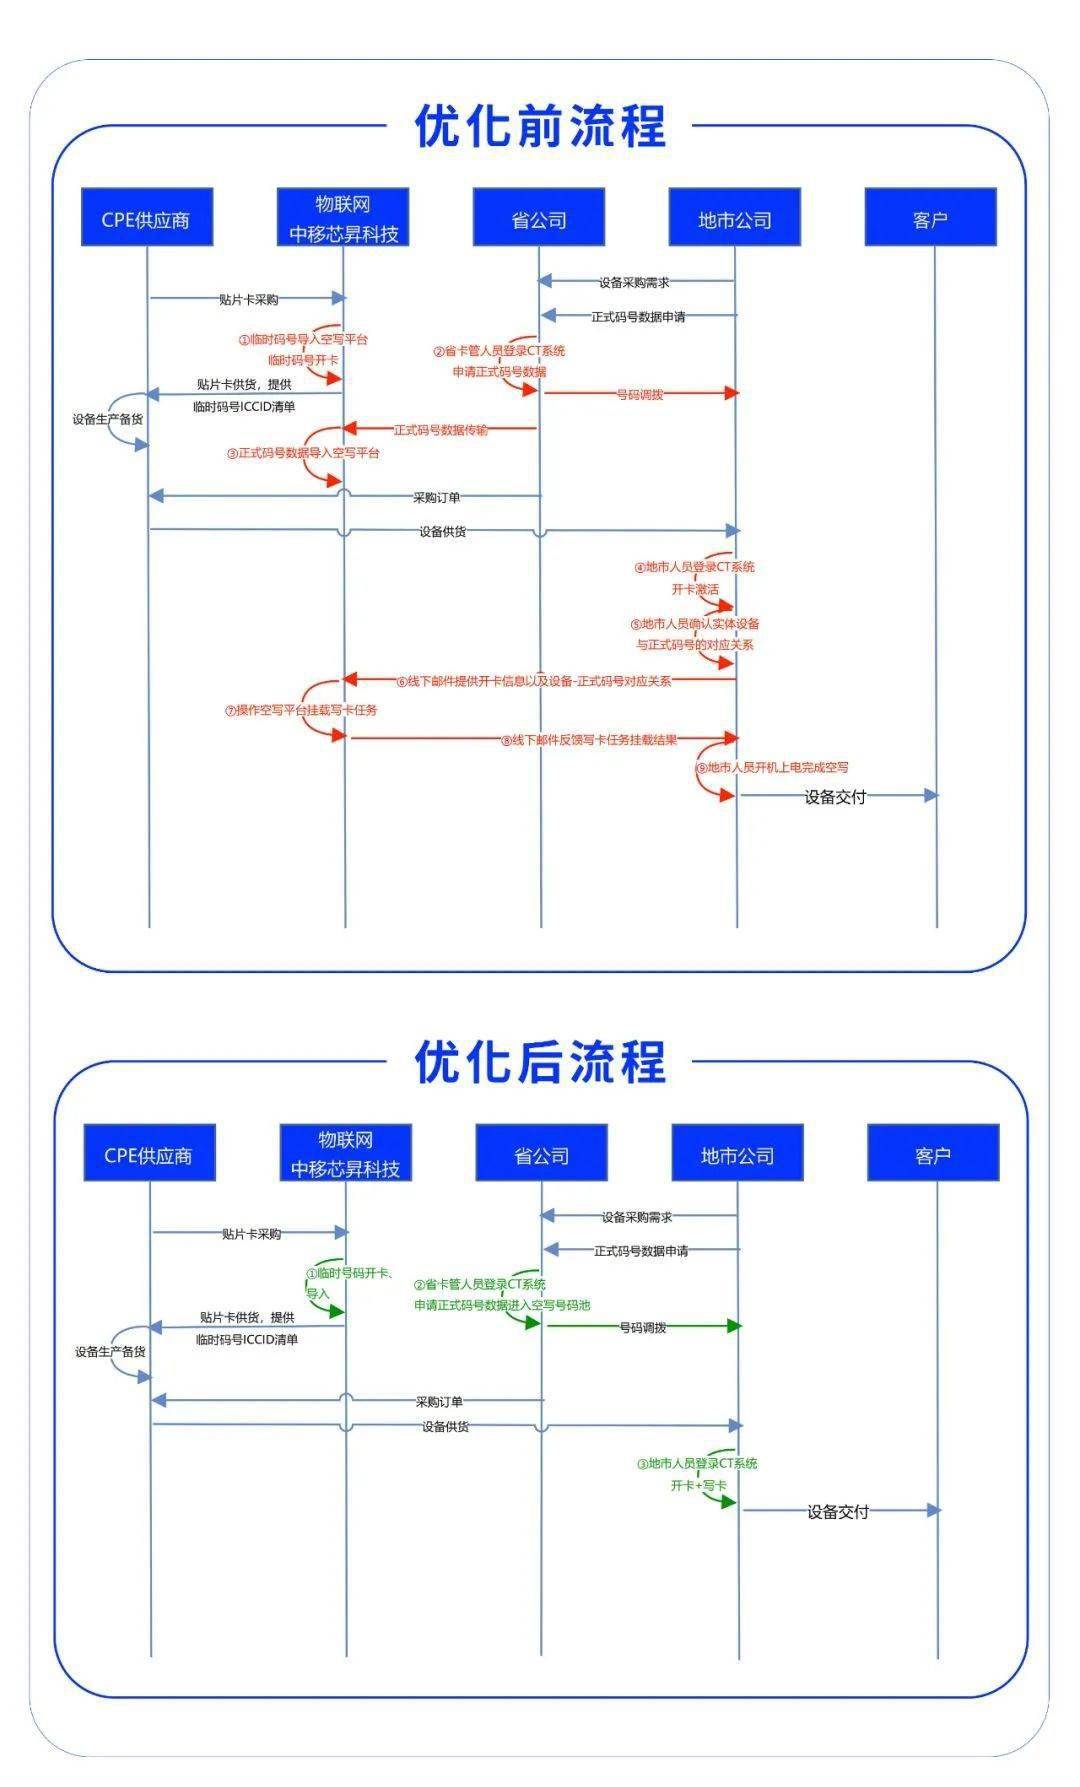 苹果mibox国际版配置:中国移动芯昇科技“eSIM+”技术发布